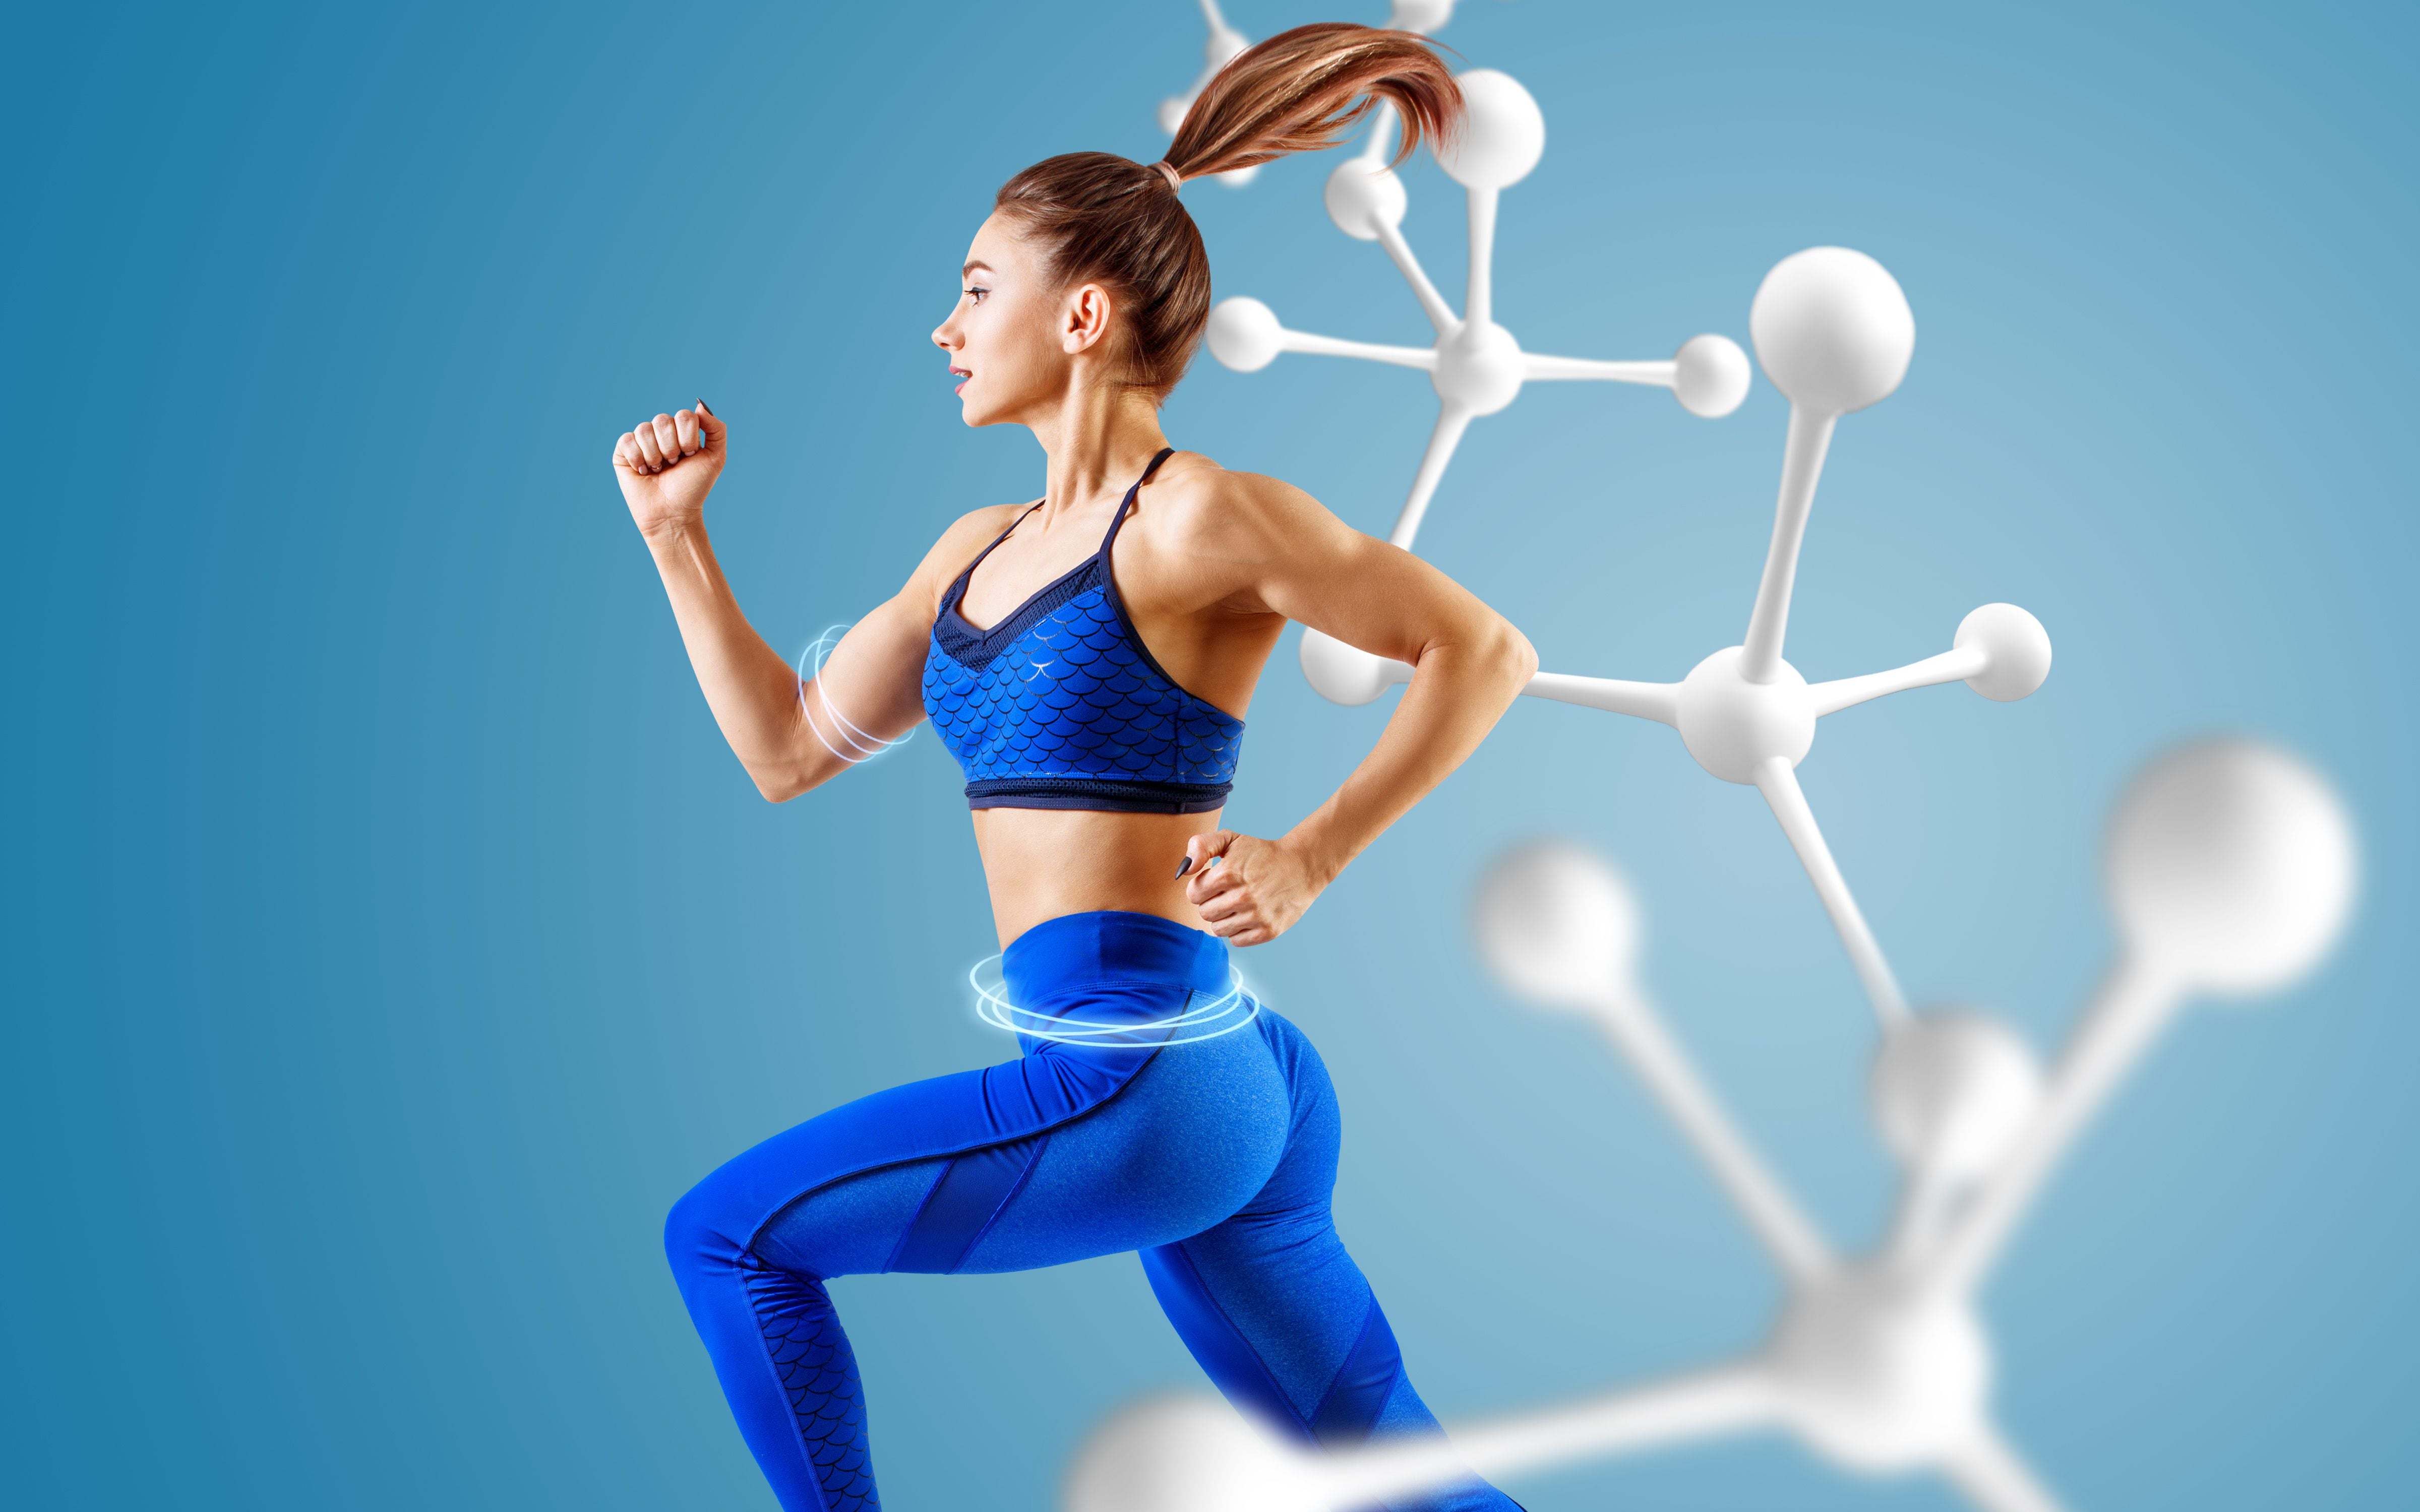 Al correr o realizar ejercicios de resistencia, el metabolismo se acelera y ayuda a que las personas con hipotiroidismo tengan una mejor calidad de vida. (Shutterstock).